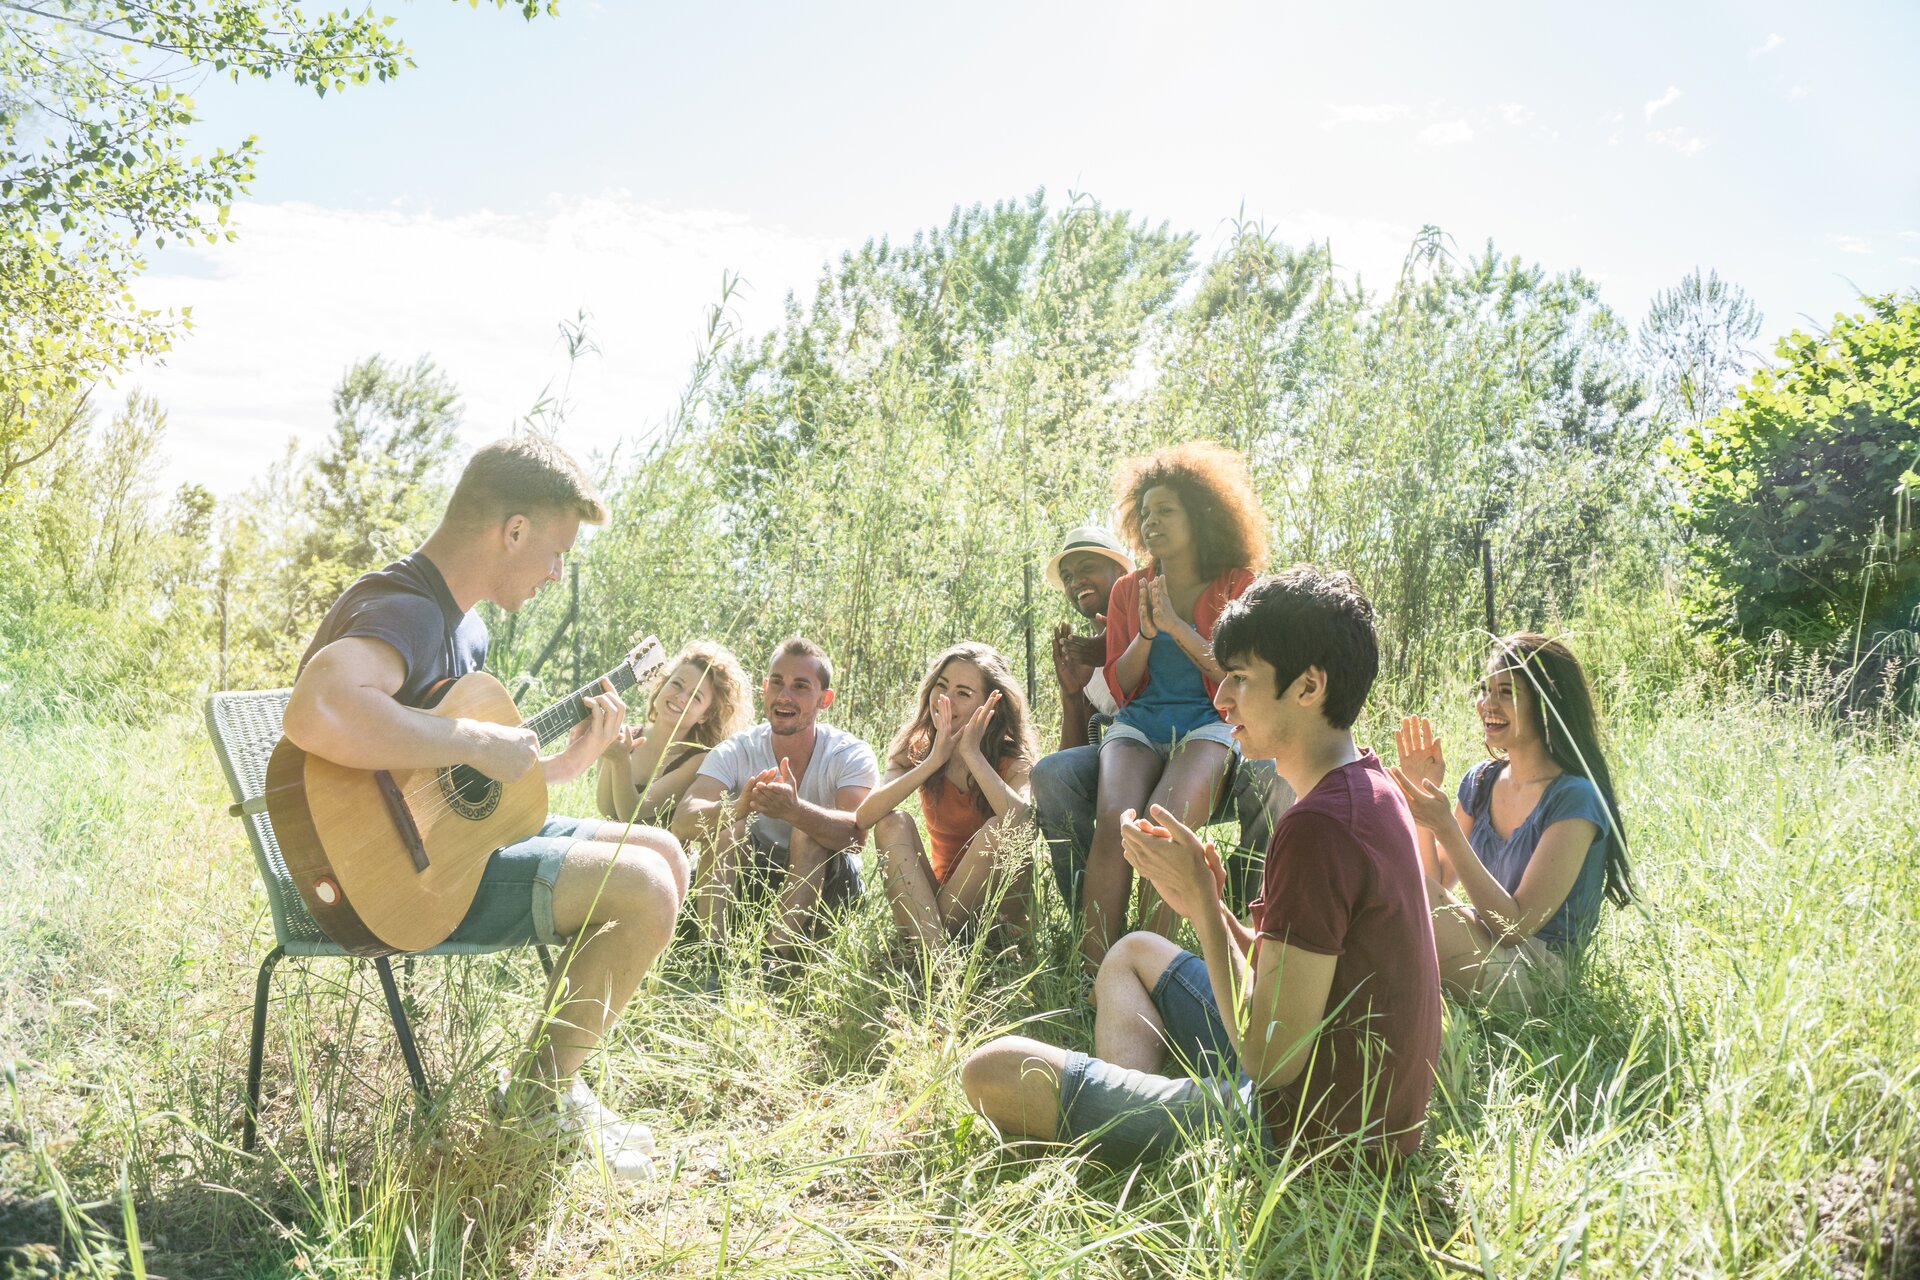 Ilustracja przedstawia grupkę przyjaciół na łonie natury. Jeden z mężczyzn po lewej stronie siedzi na krześle ogrodowym i gra na gitarze, wokół niego znajdują się nastolatkowie, którzy się uśmiechają i klaszczą.